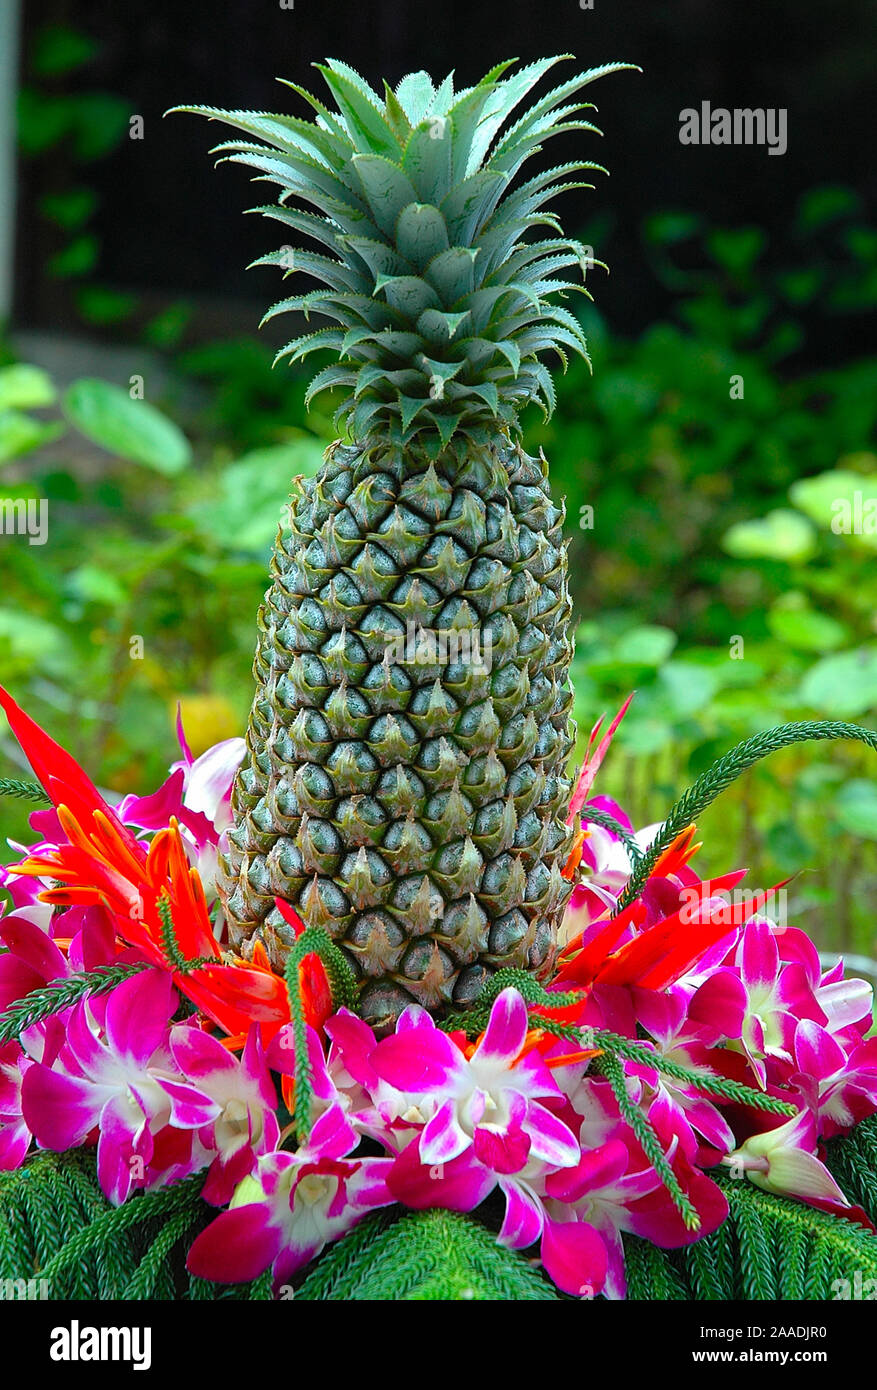 Ananas dekoriert mit Blumen Stock Photo - Alamy